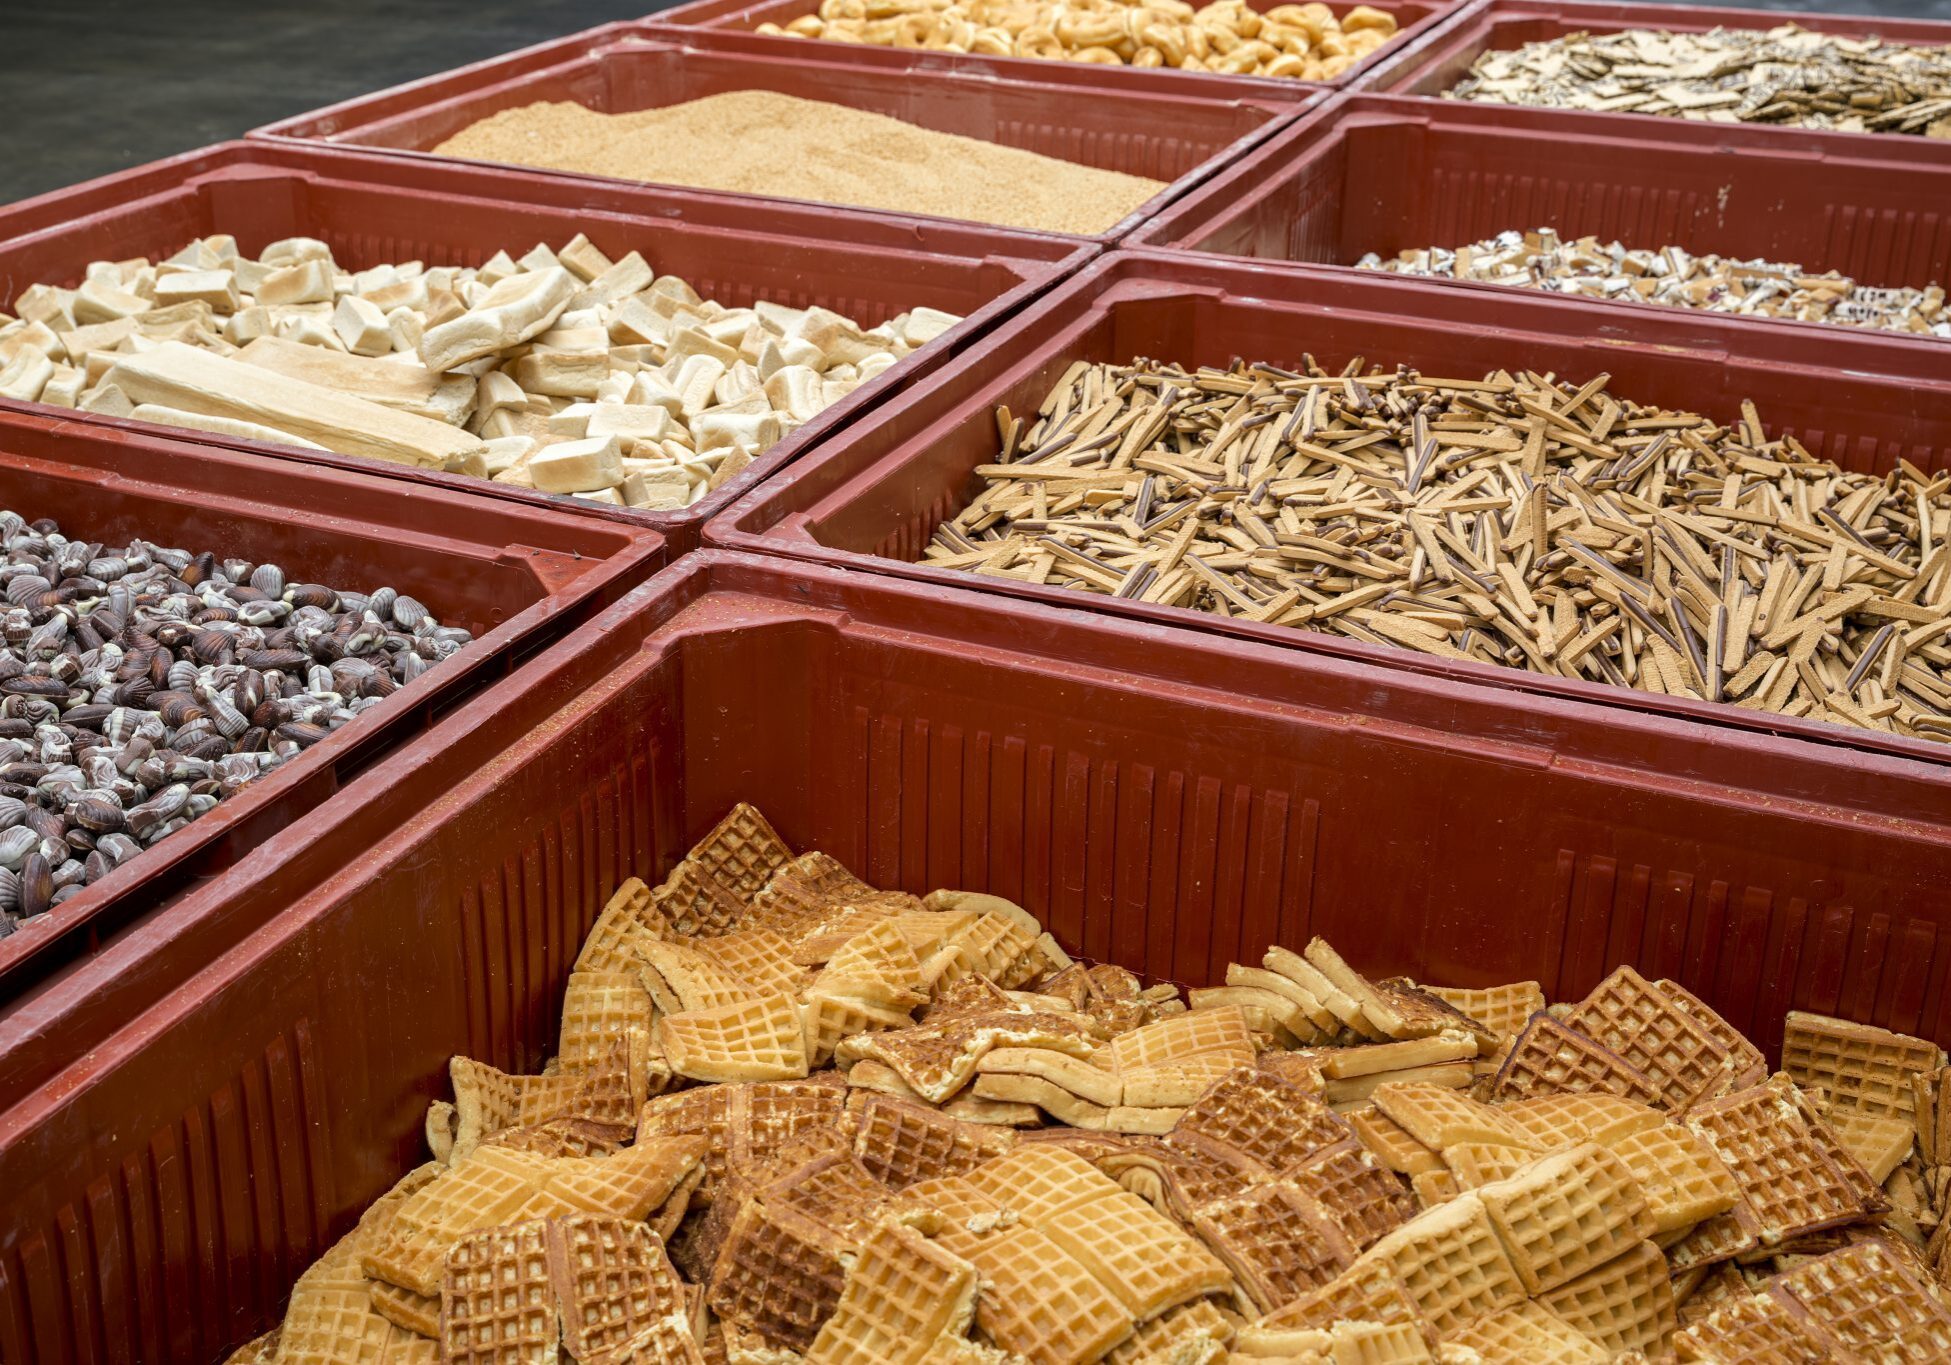 nijsen granico verwerkt nevenproducten zoals koek snoep en deegwaren tot hoogwaardige food for feed grondstoffen